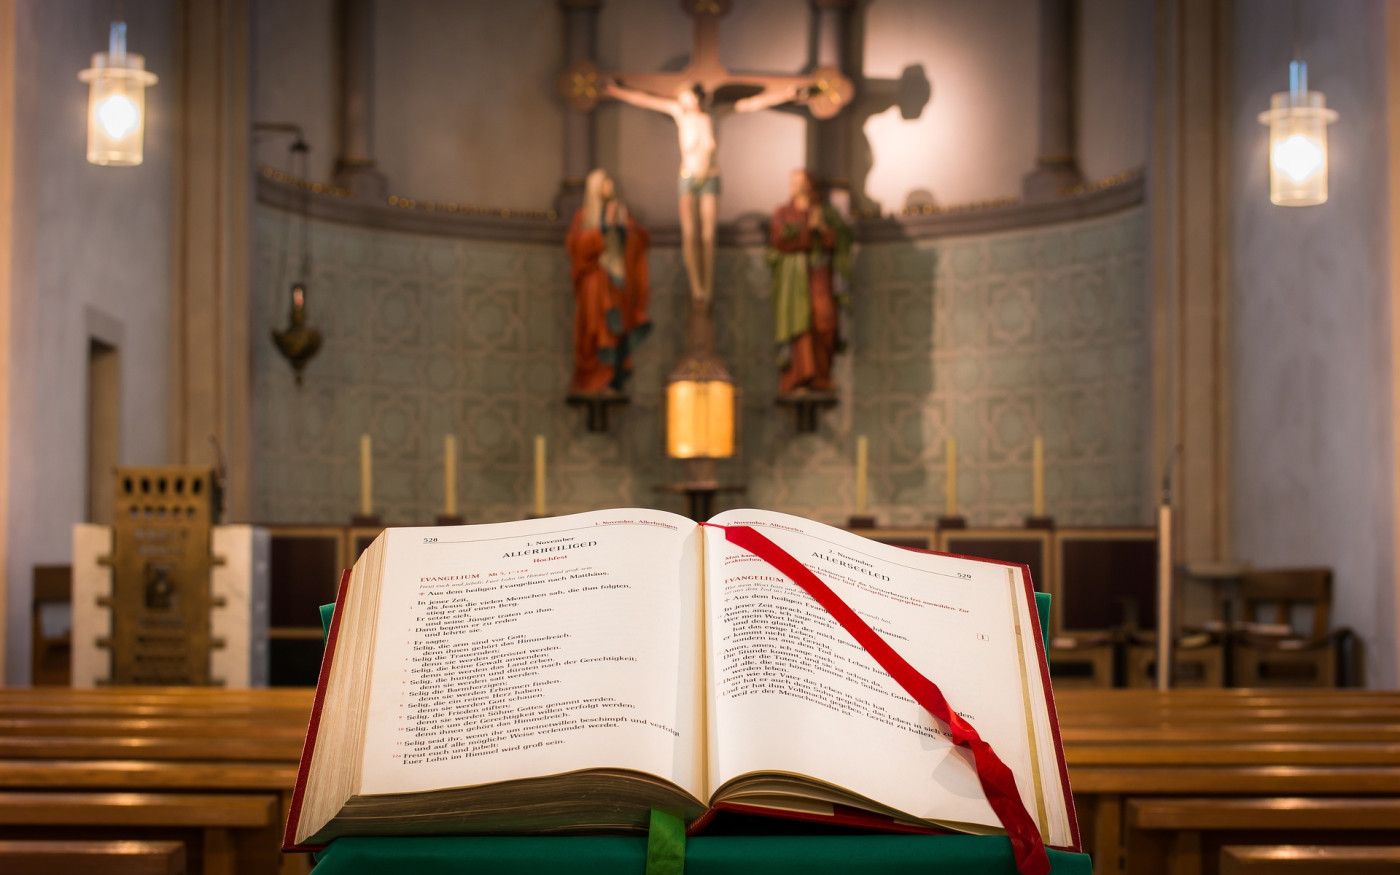 Es gibt nur einen Gott – keinen evangelischen oder katholischen: Das ökumenische Kirchenforum Gifhorn plant eine Vielzahl von Veranstaltungen